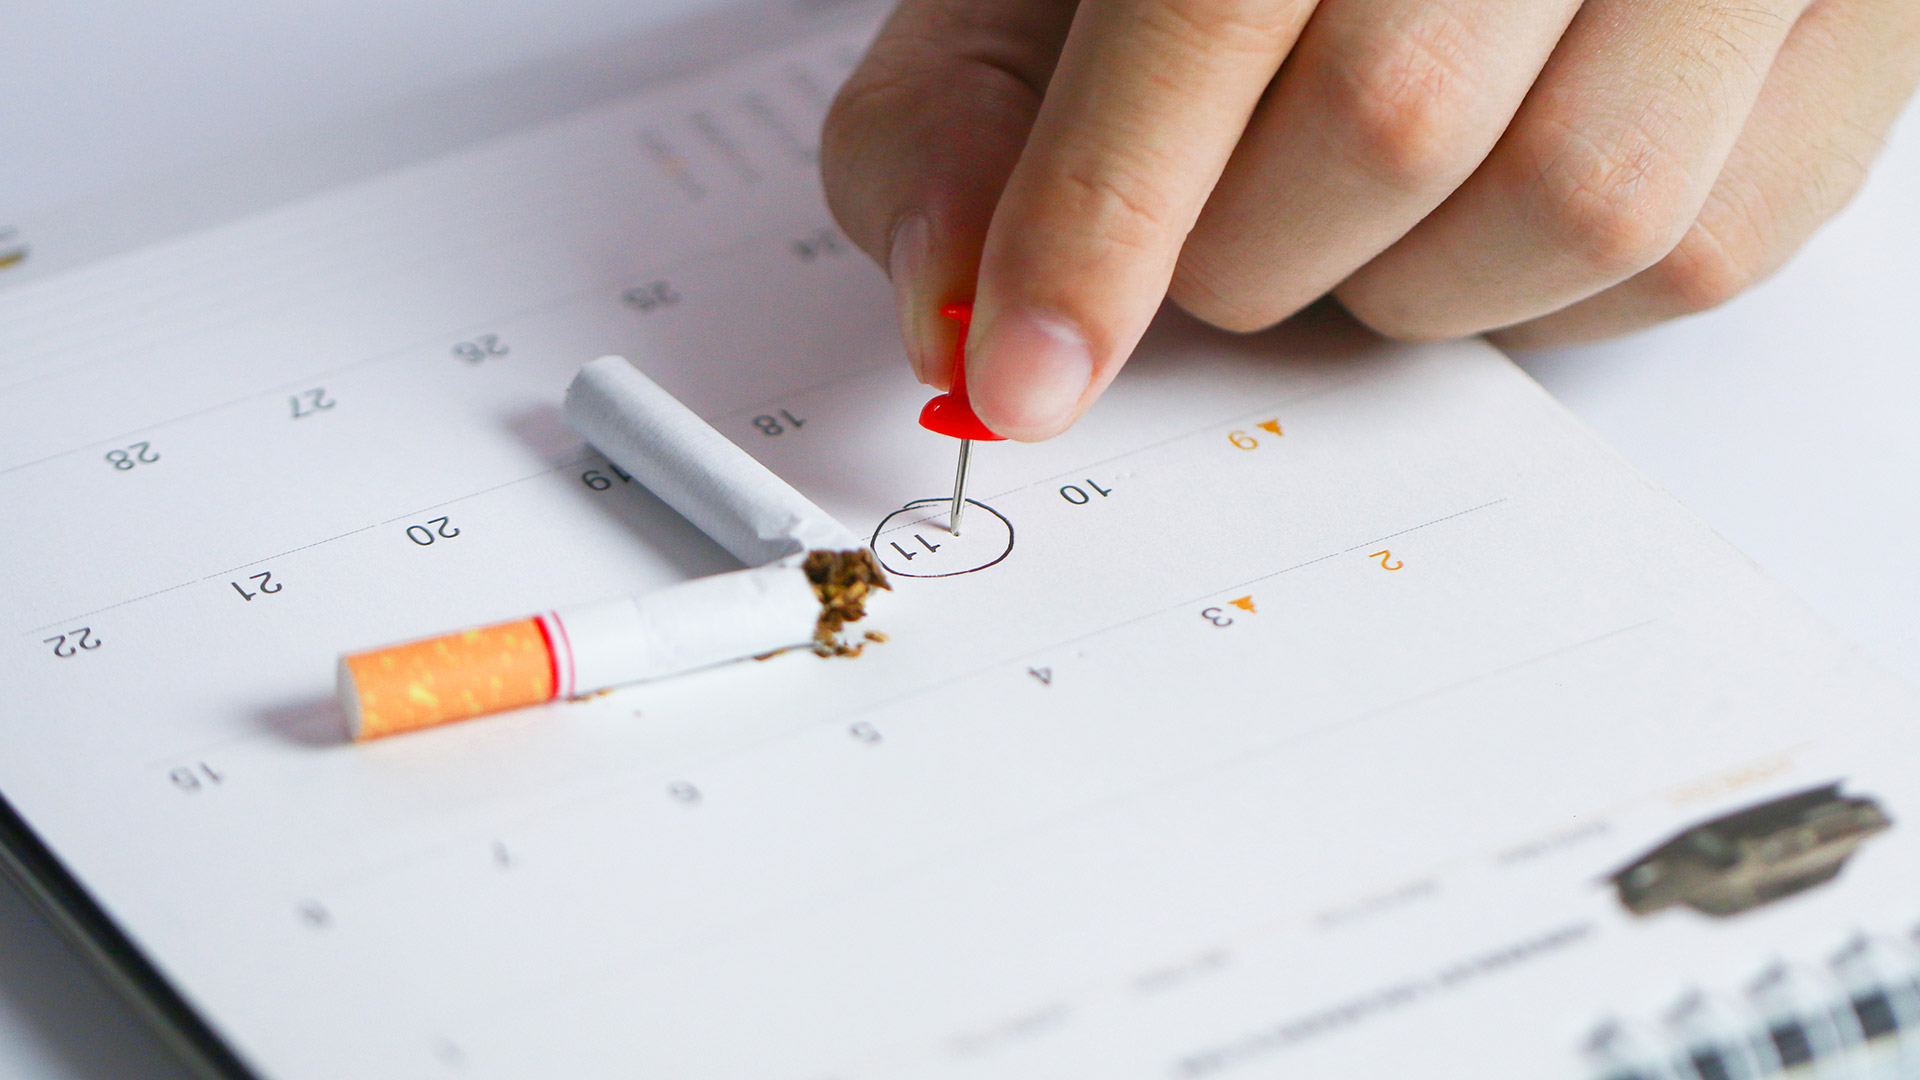 Se estima que el 50% de los fumadores intentó dejar de fumar en el último tiempo. Sin apoyo para dejar la adicción, solo el 4% de los intentos funcionan (Getty)